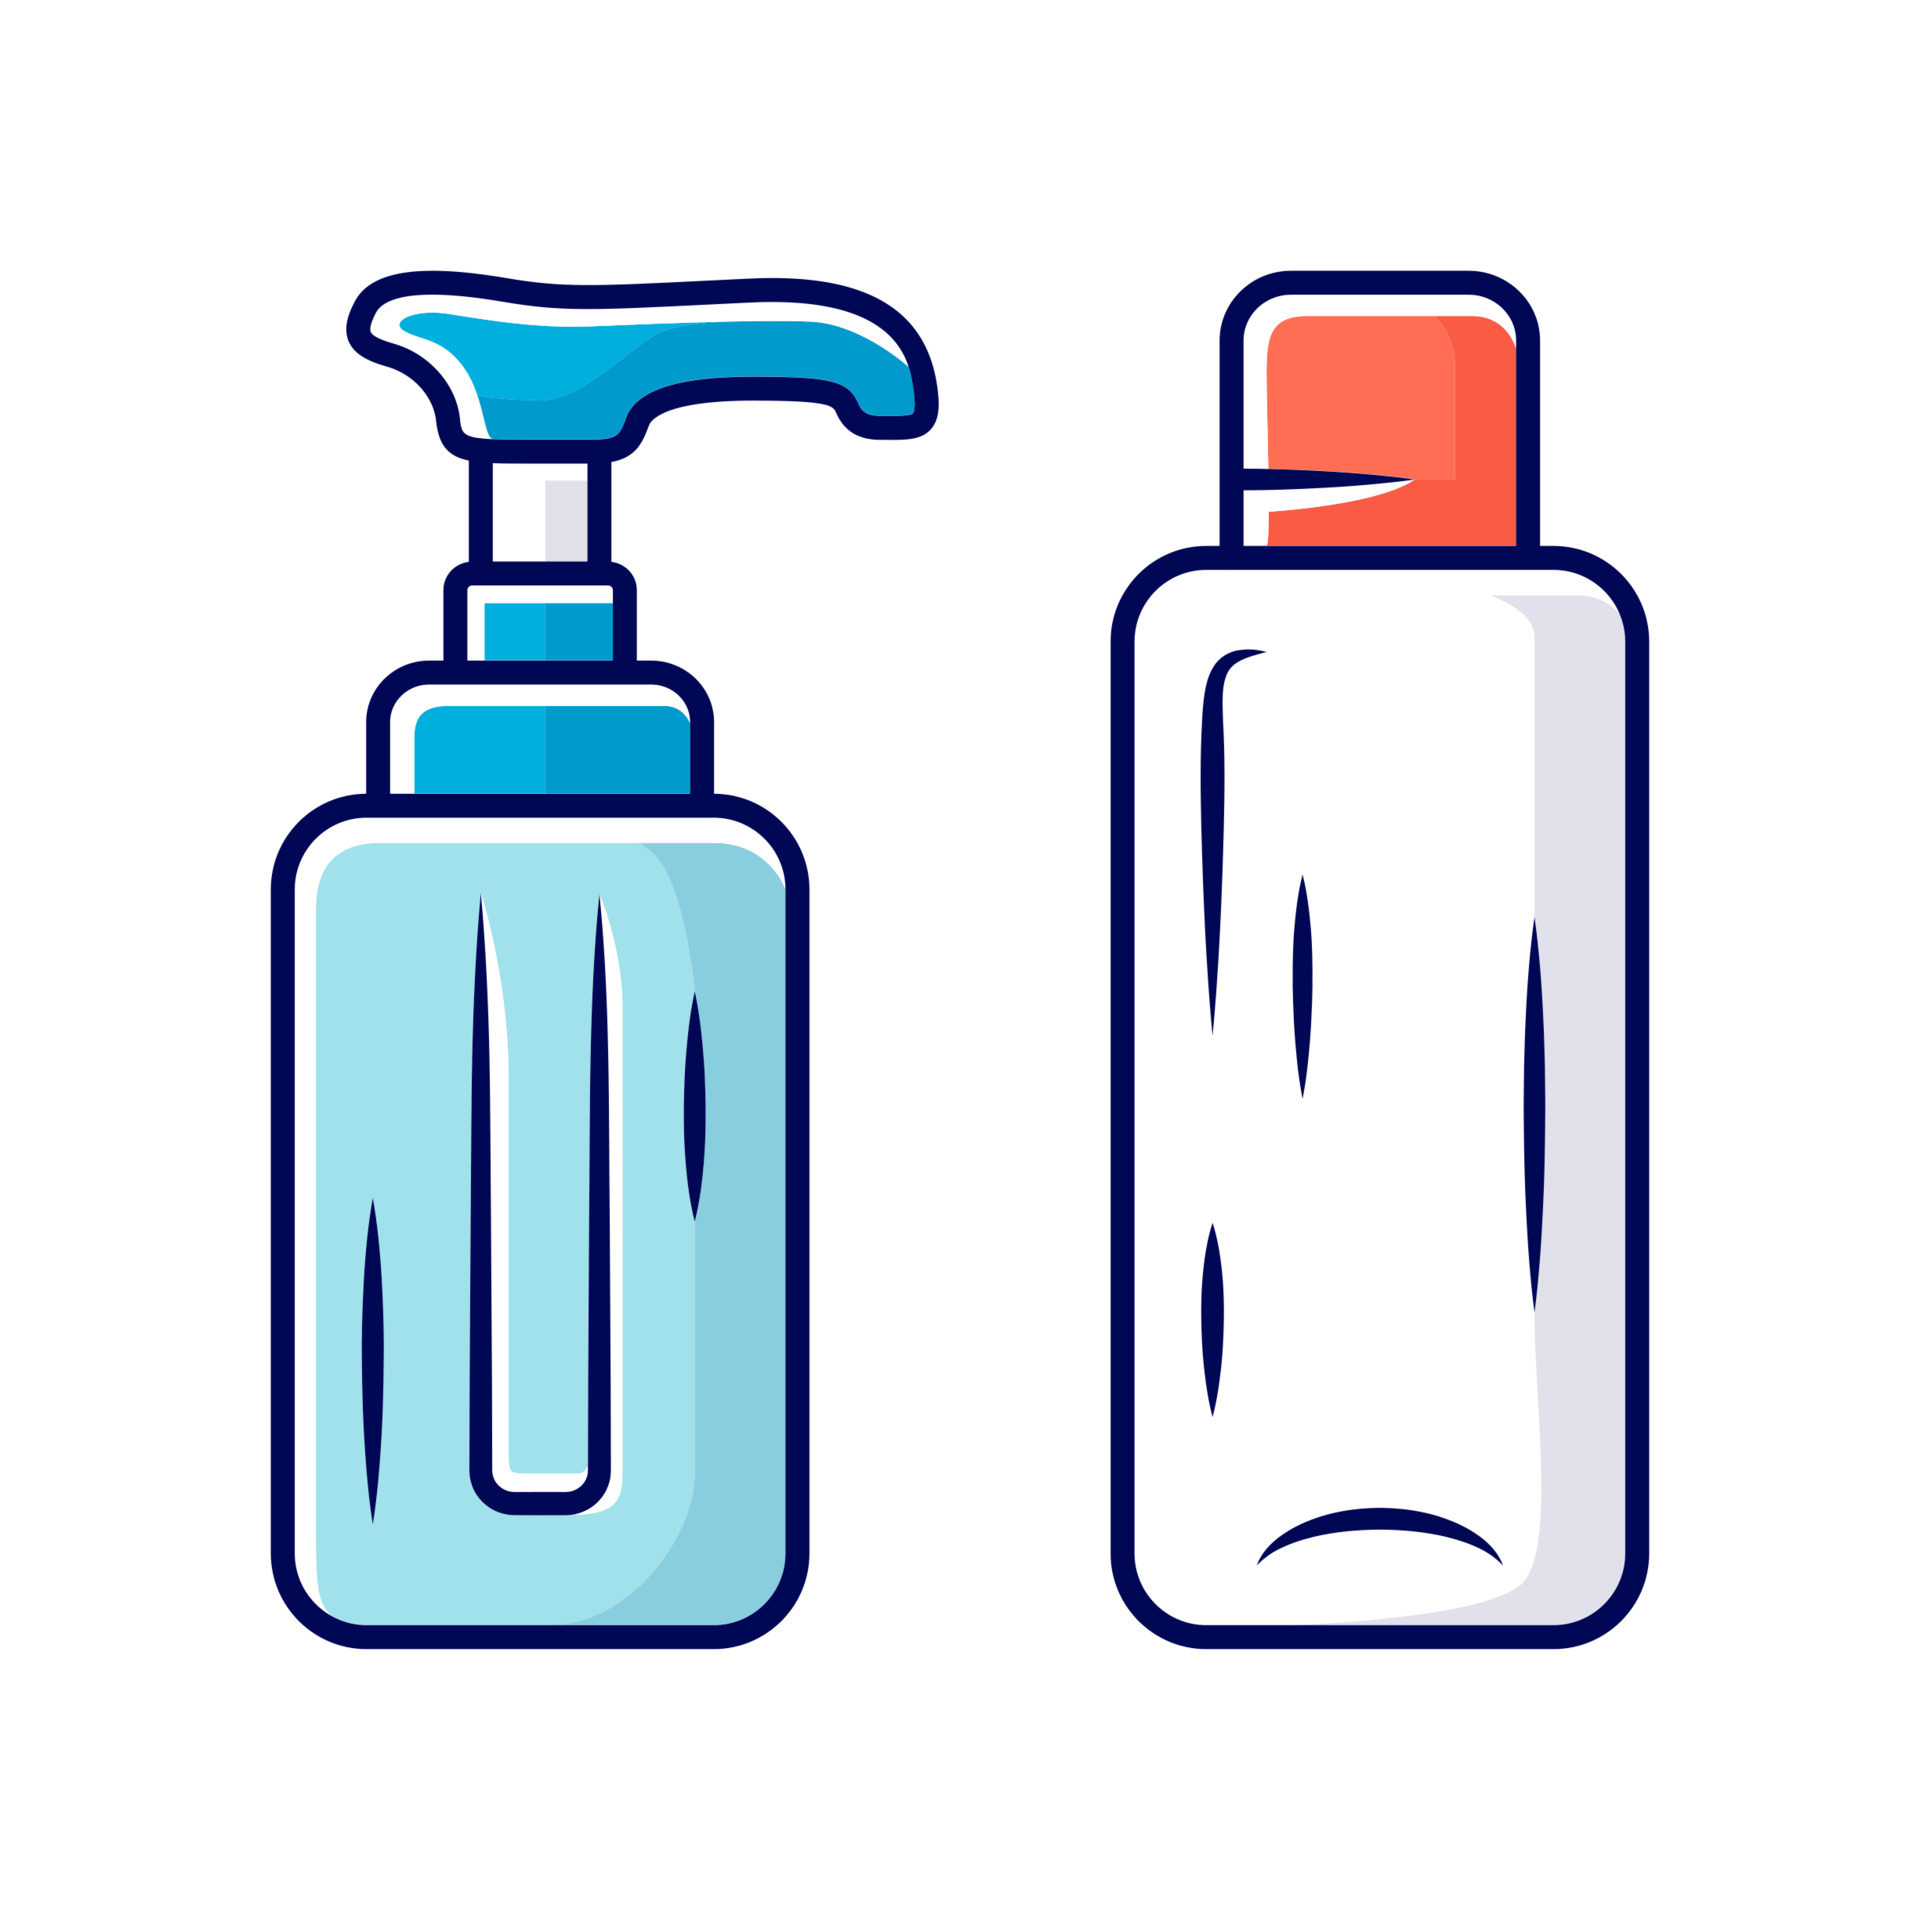 https://static.vecteezy.com/ti/vecteur-libre/p3/7487403-vide-reutilisables-conteneurs-couleur-icone-shampooing-et-bouteilles-de-savon-pour-voyage-hygiene-personnelle-soins-auto-produits-voyage-voyage-equipement-article-accessoire-illustrationle-isolee-vectoriel.jpg